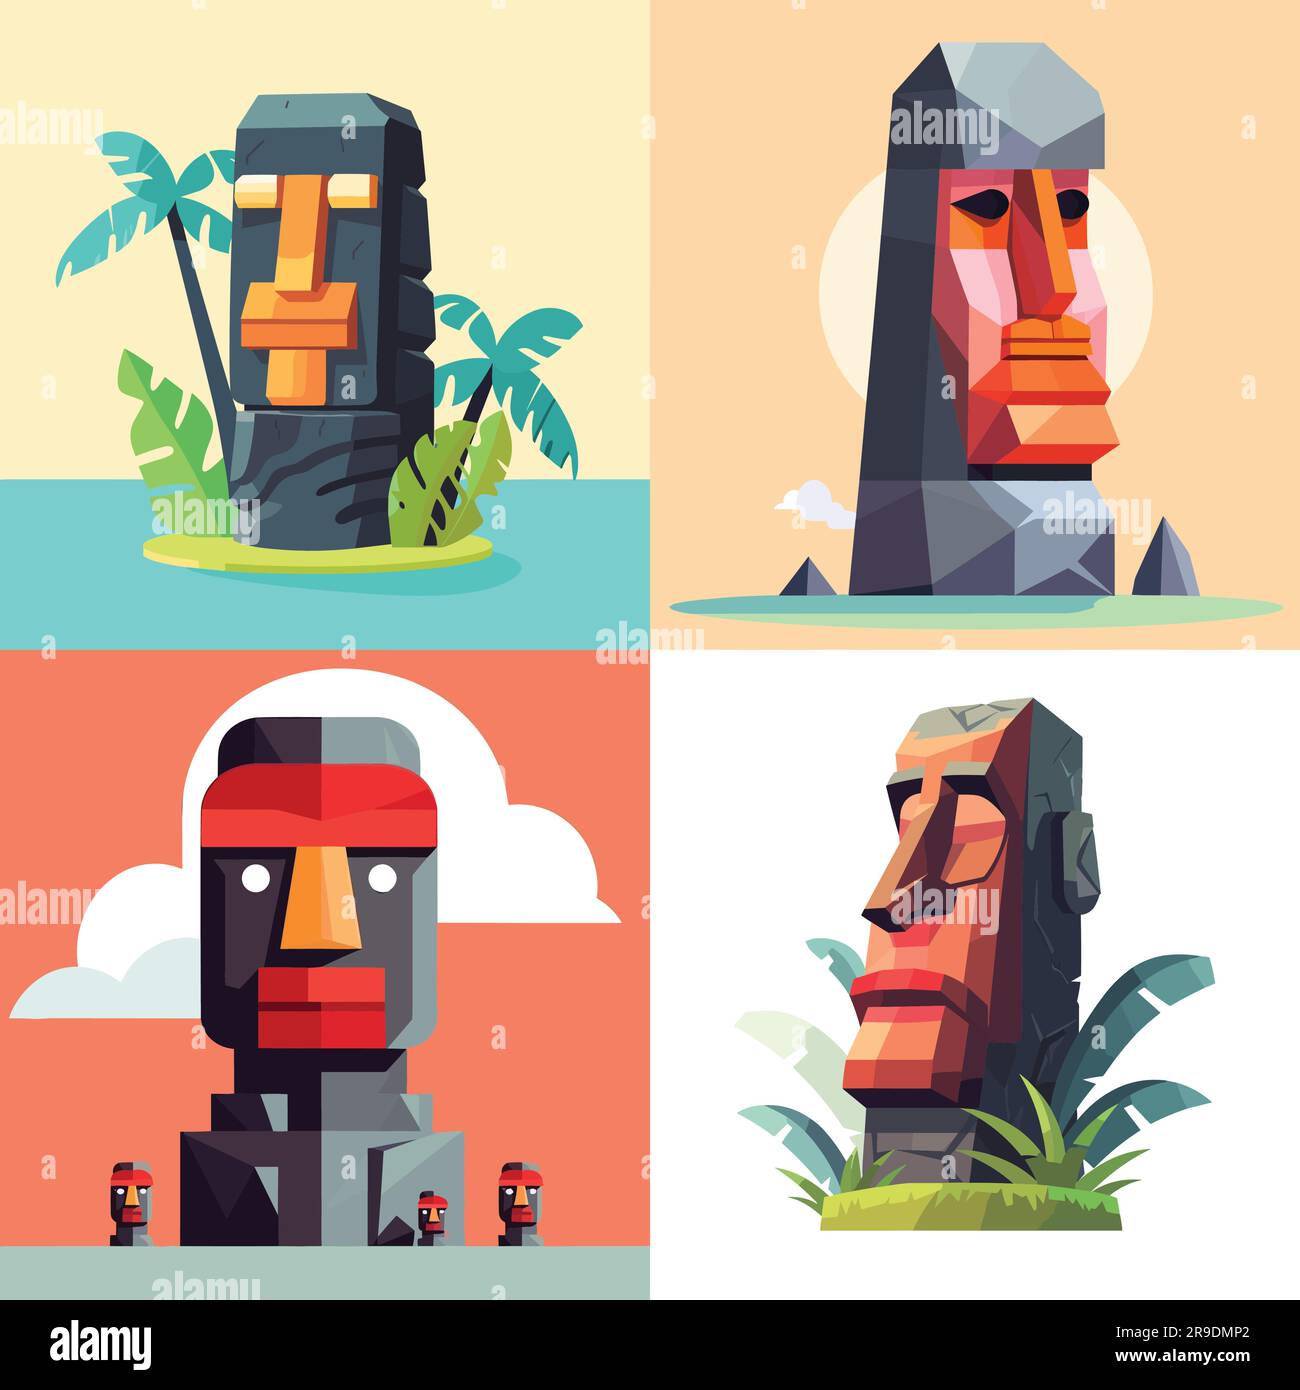 Moai Emoji Images - Free Download on Freepik